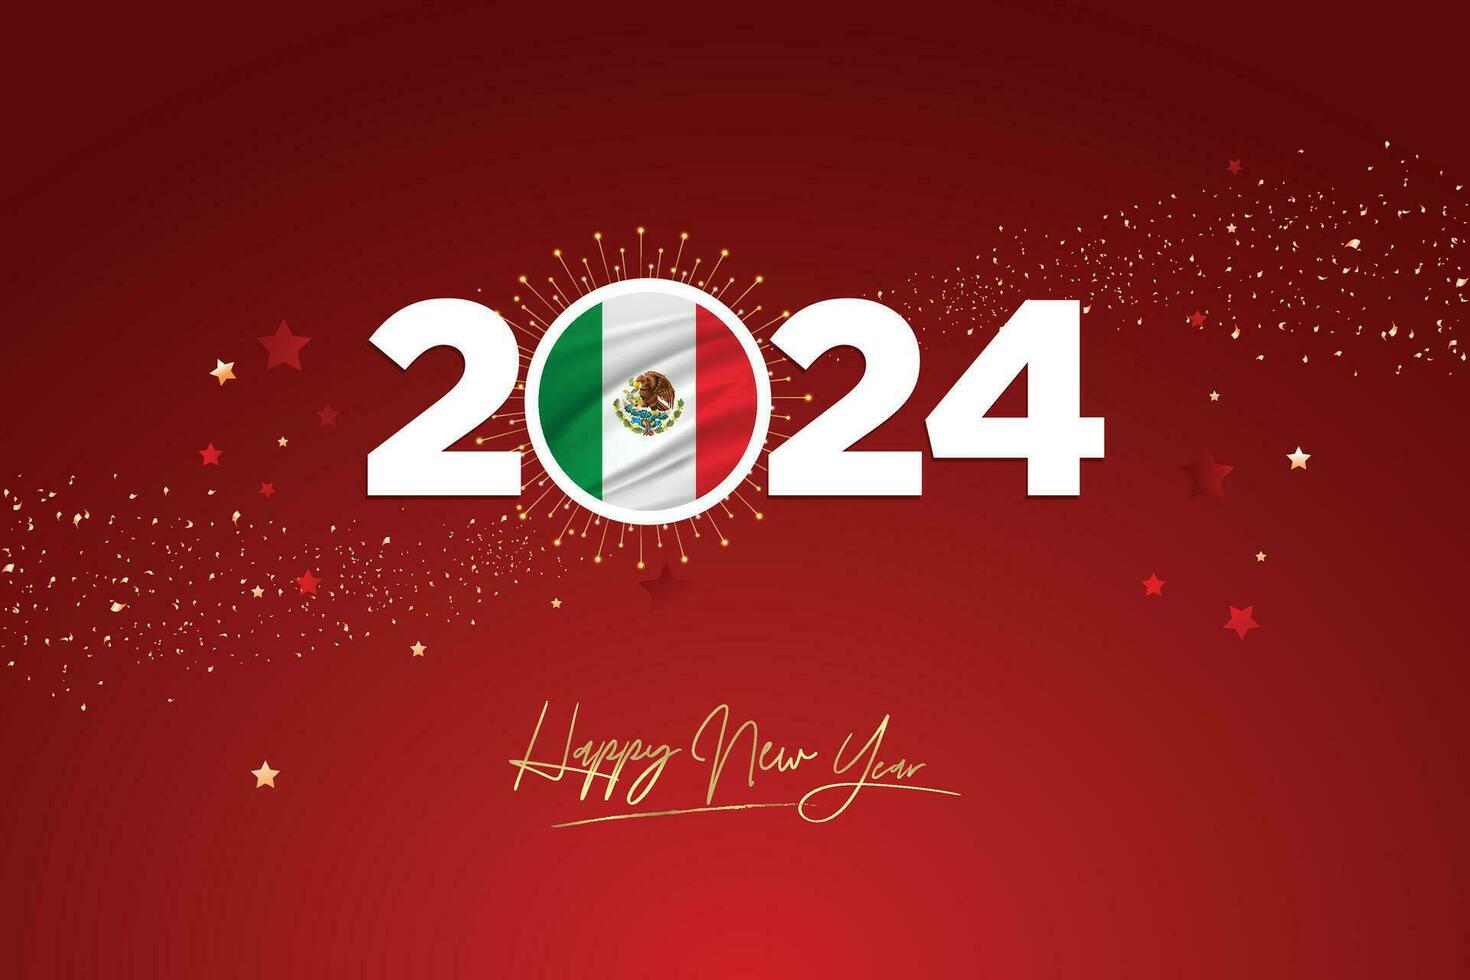 vistoso contento nuevo año festival diseño bandera, nuevo año 2024 logo con mexicano bandera en granate rojo papel picado y estrella fondo, calendario 2024, social medios de comunicación nuevo año bandera, enviar tarjeta, saludos vector